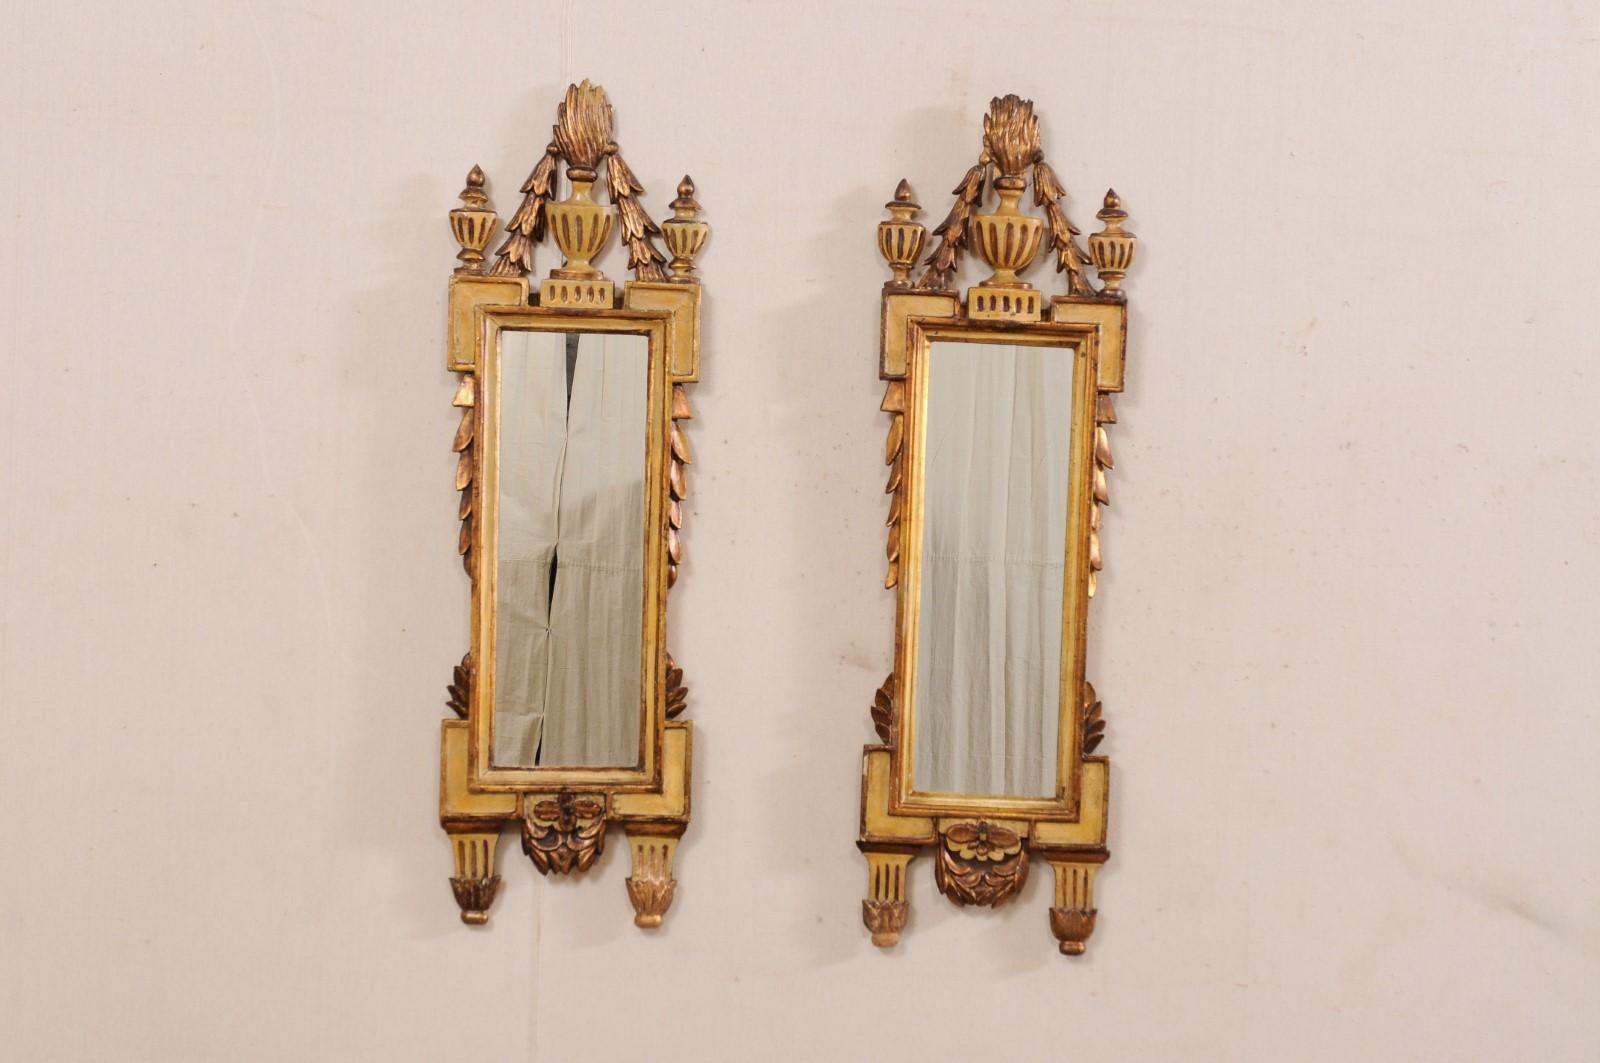 Paire de miroirs muraux néoclassiques italiens du XIXe siècle. Ces miroirs anciens d'Italie présentent des pots à feu au sommet de leur crête, avec des guirlandes qui descendent jusqu'à leurs épaules, ornées de fleurons surélevés. Les miroirs sont